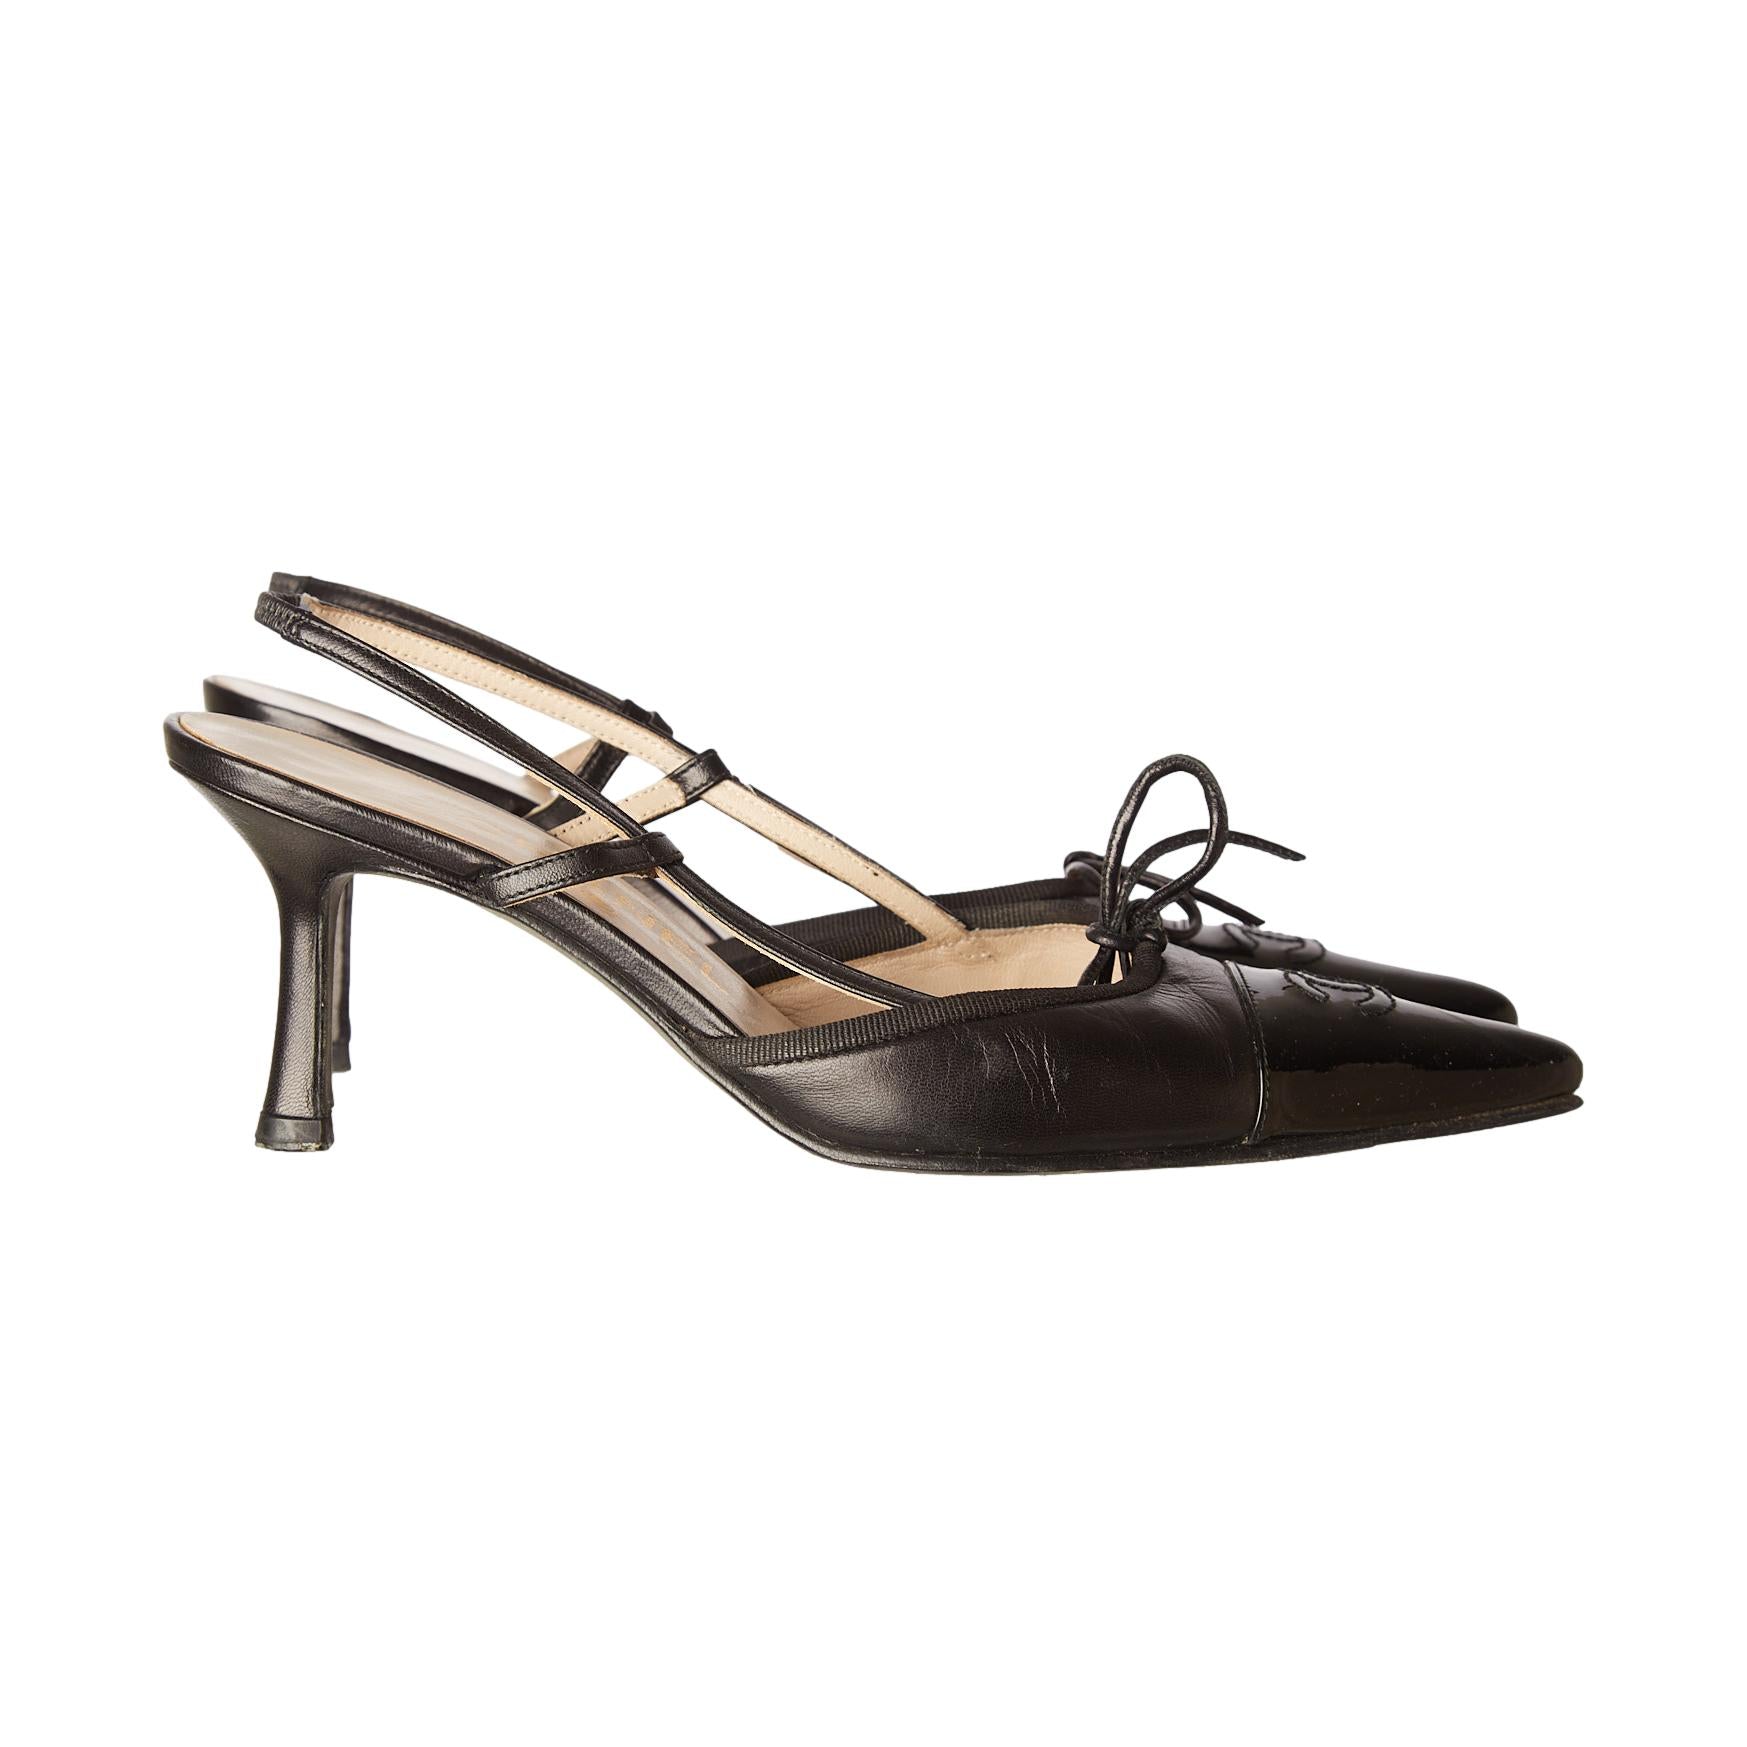 RARE Chanel Black Suede Heels 120mm “CC” logo - Luxury & Vintage